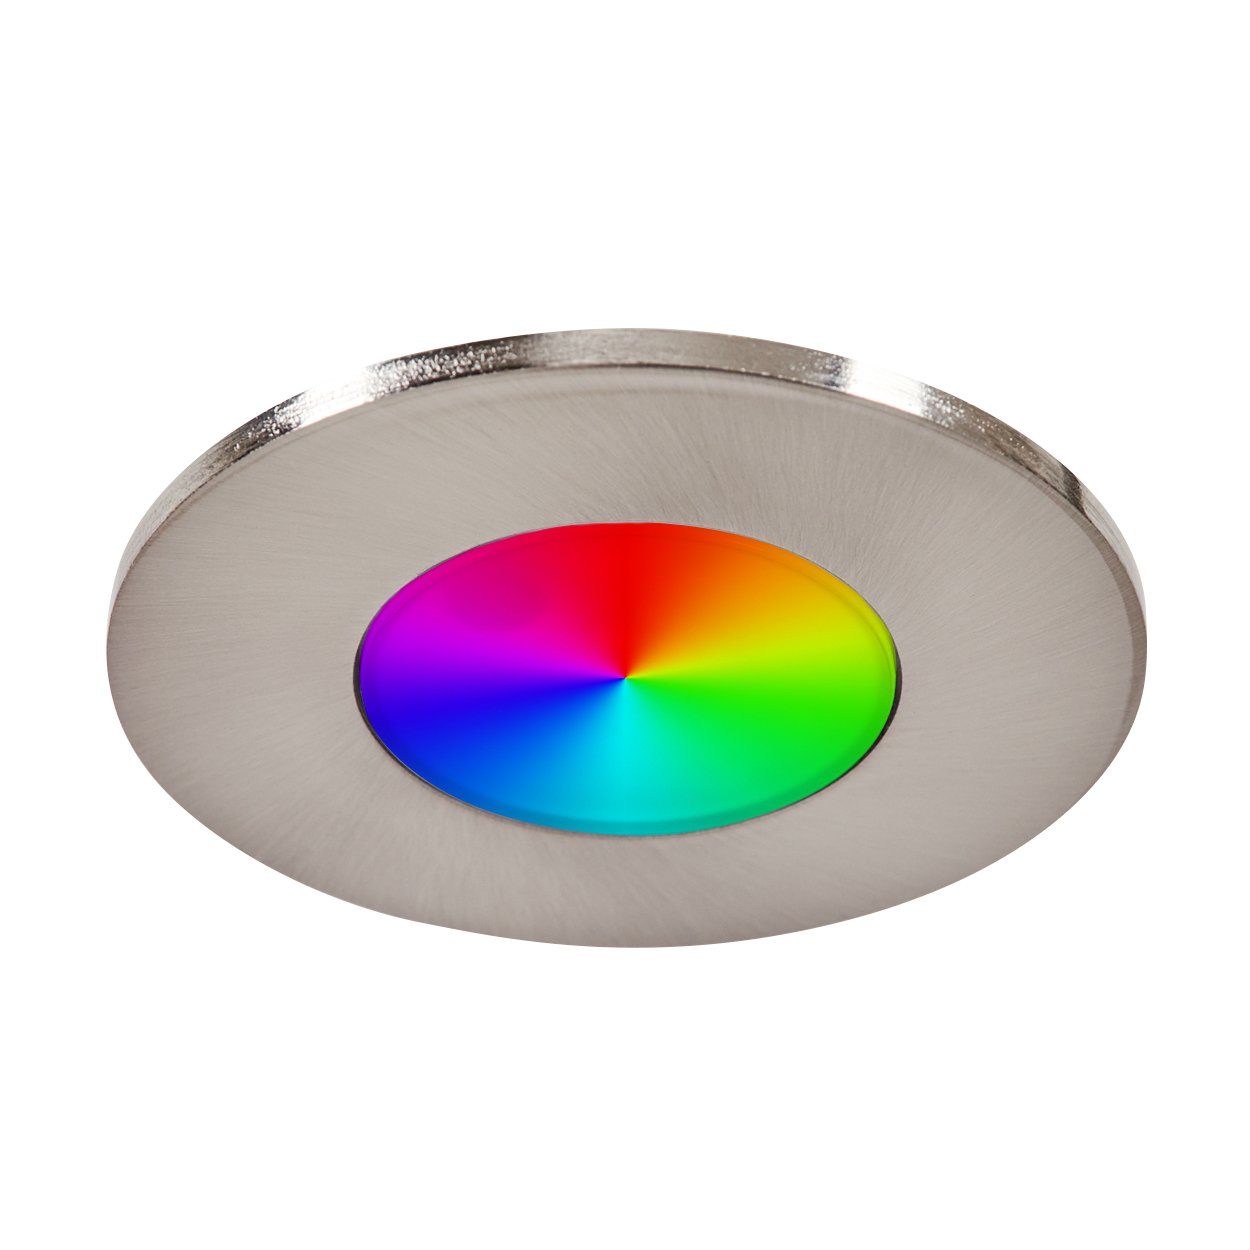 hofstein Deckenleuchte »Miramar« 3er Fernbedienung, Kelvin, mit 6500 Lumen, LED u. 1035 je Set dimmbare Nickel-matt/Klar, RGB-Farbwechsler Deckenleuchte Metall, RGB aus